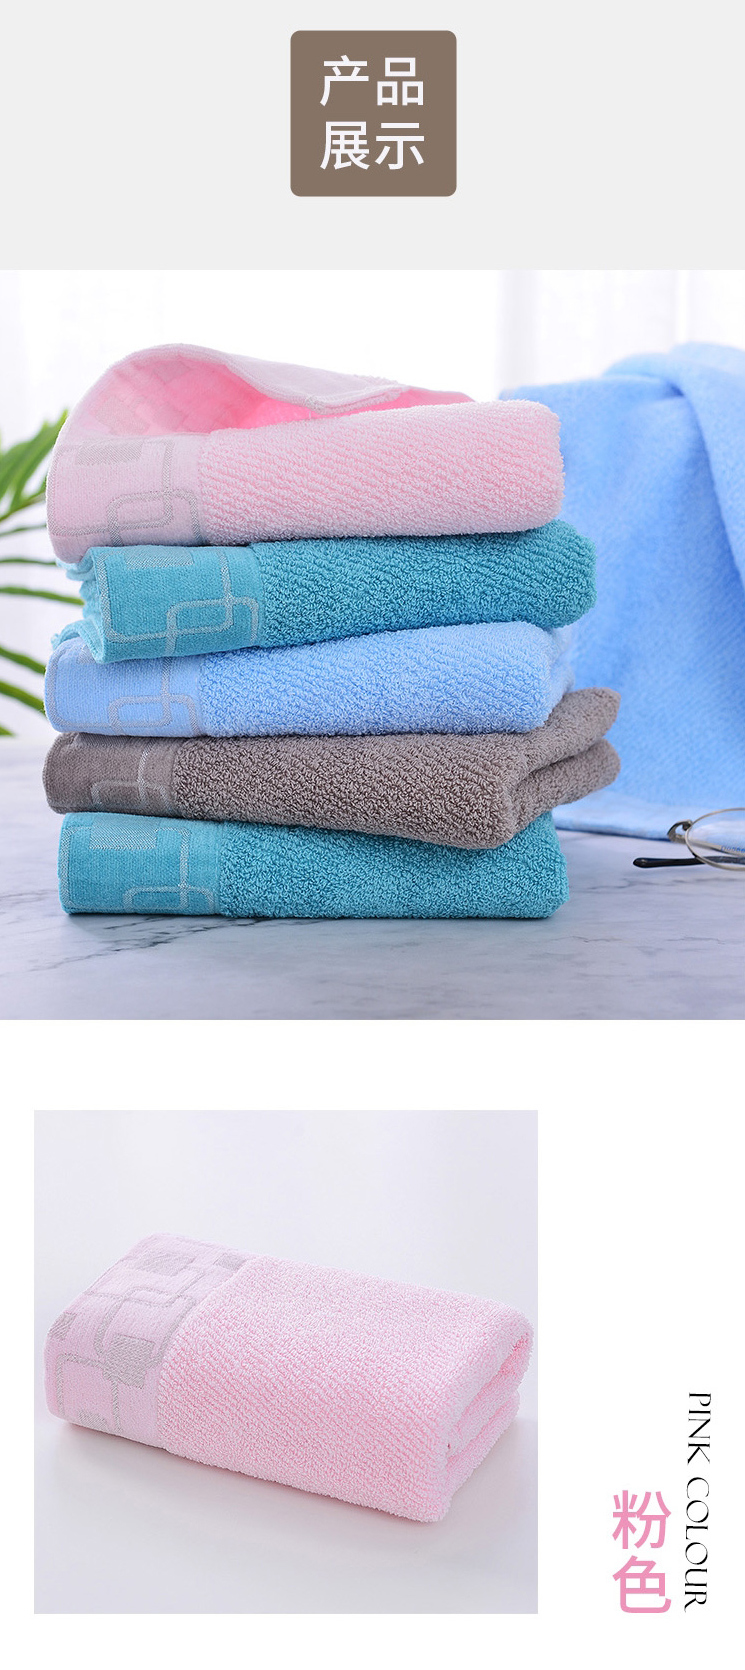 洁丽雅长绒棉毛巾两条装礼盒W0402 蓝色+粉色 33cmx74cm A类毛巾 婴幼儿可用